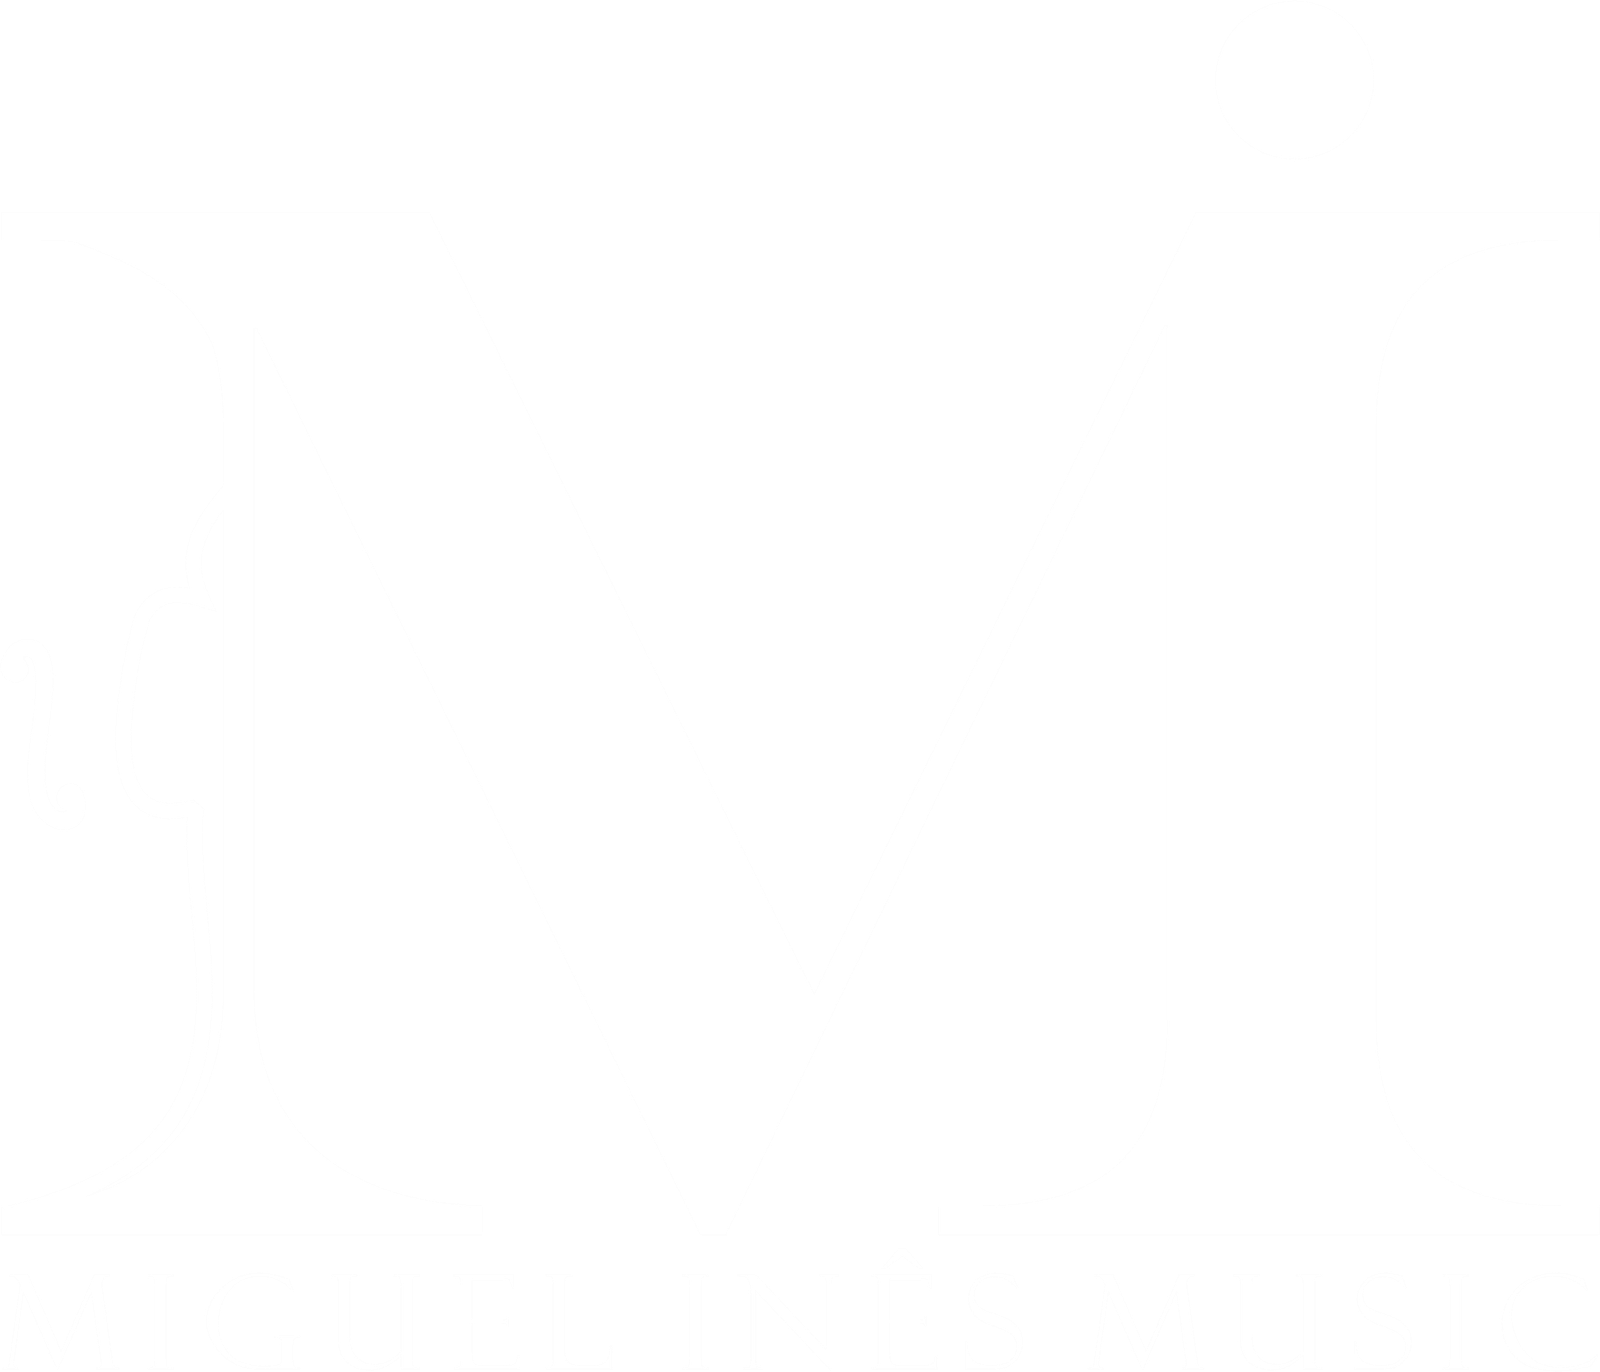 Miguel Inês Music